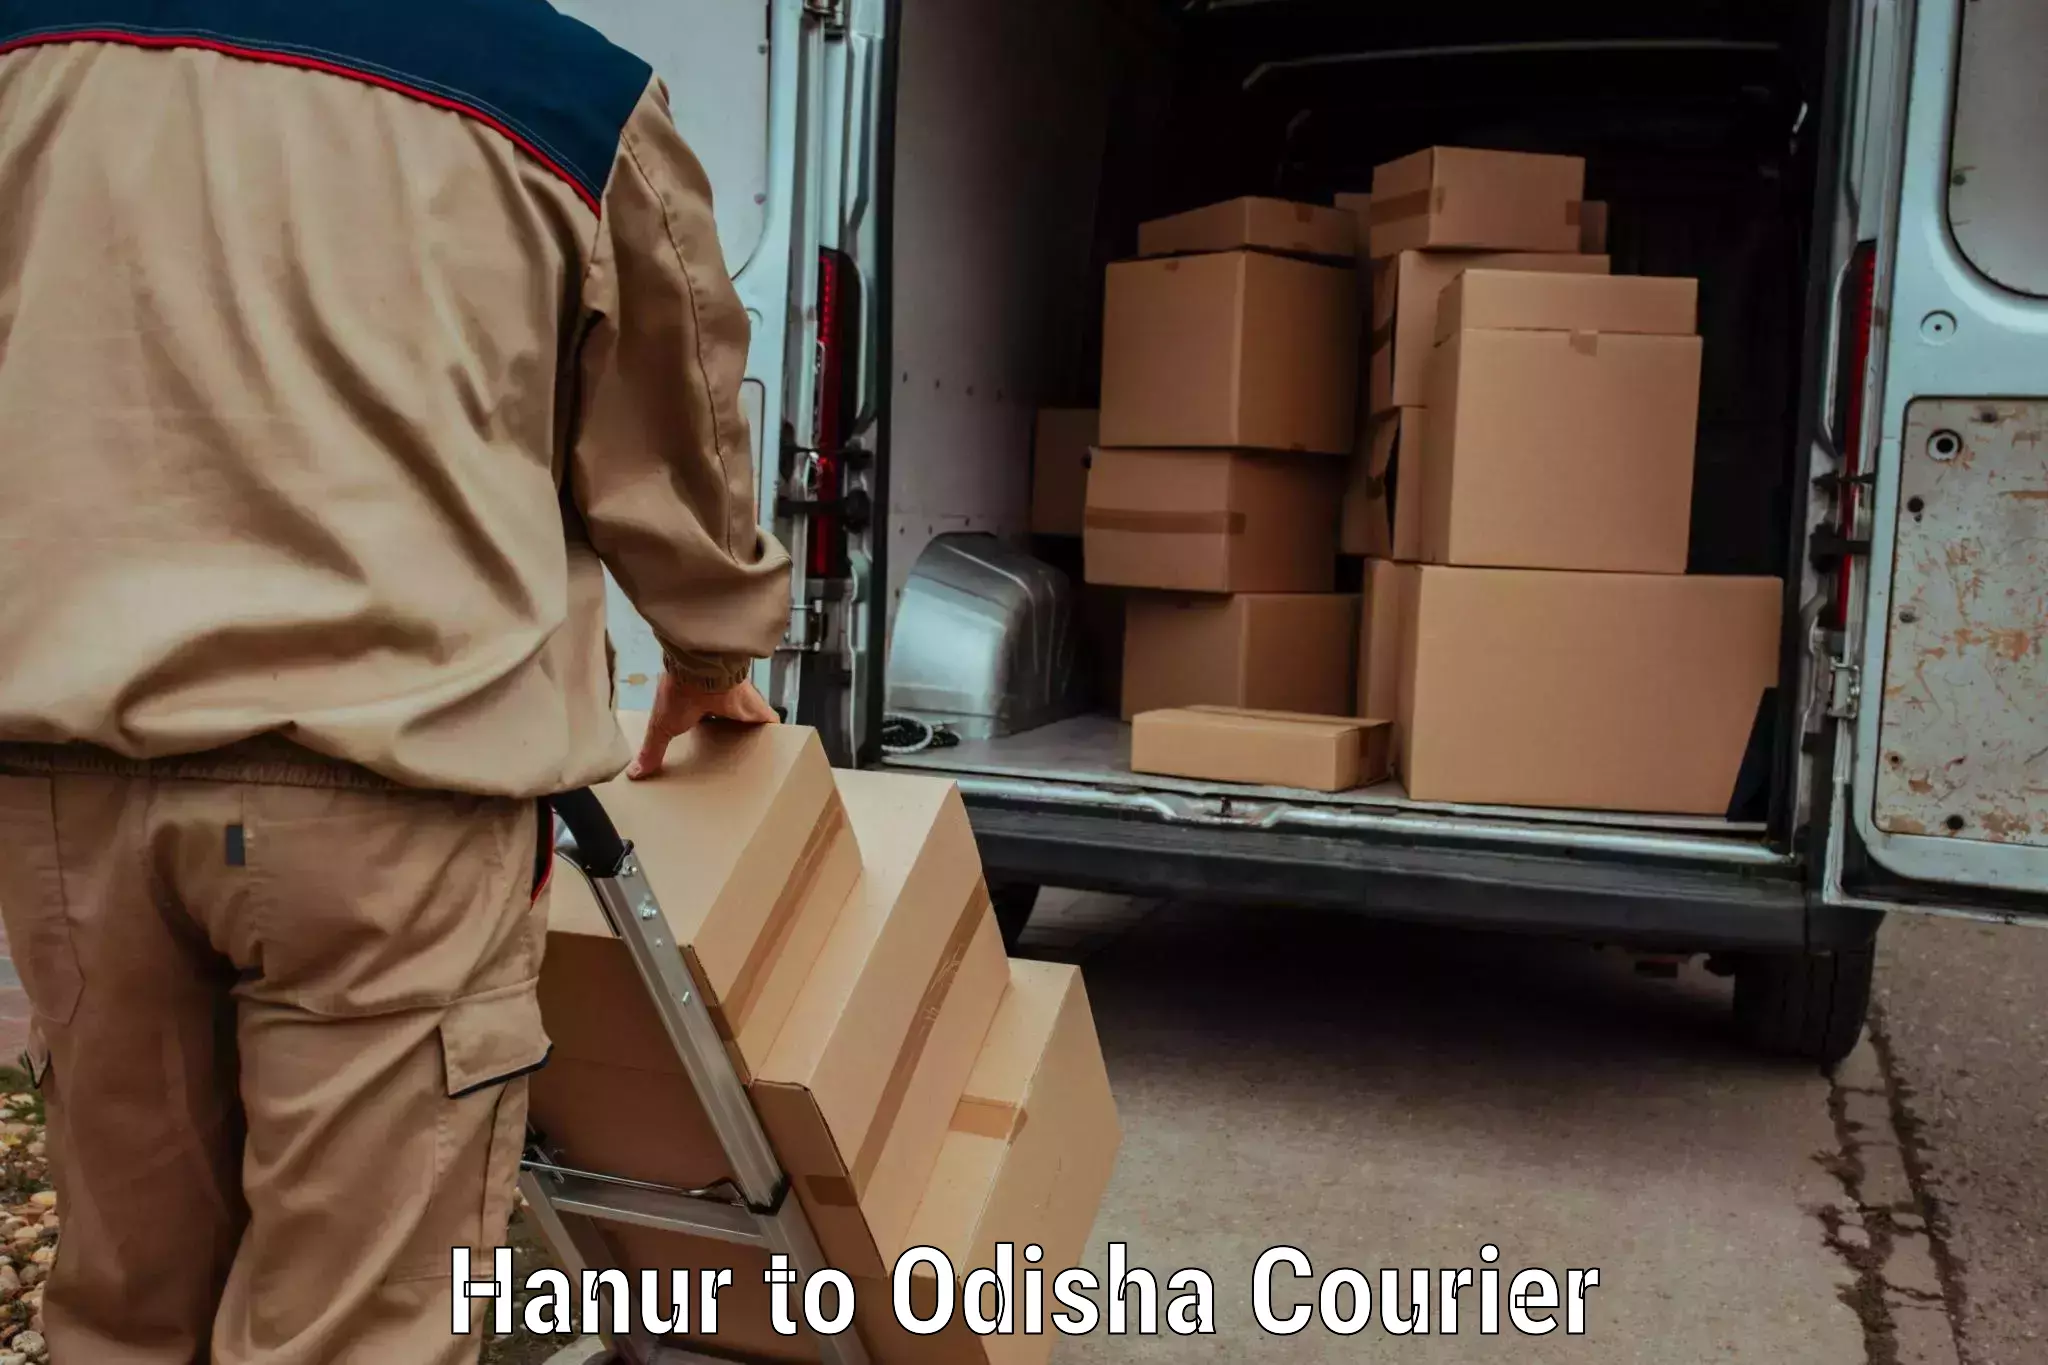 Speedy delivery service in Hanur to Sohela